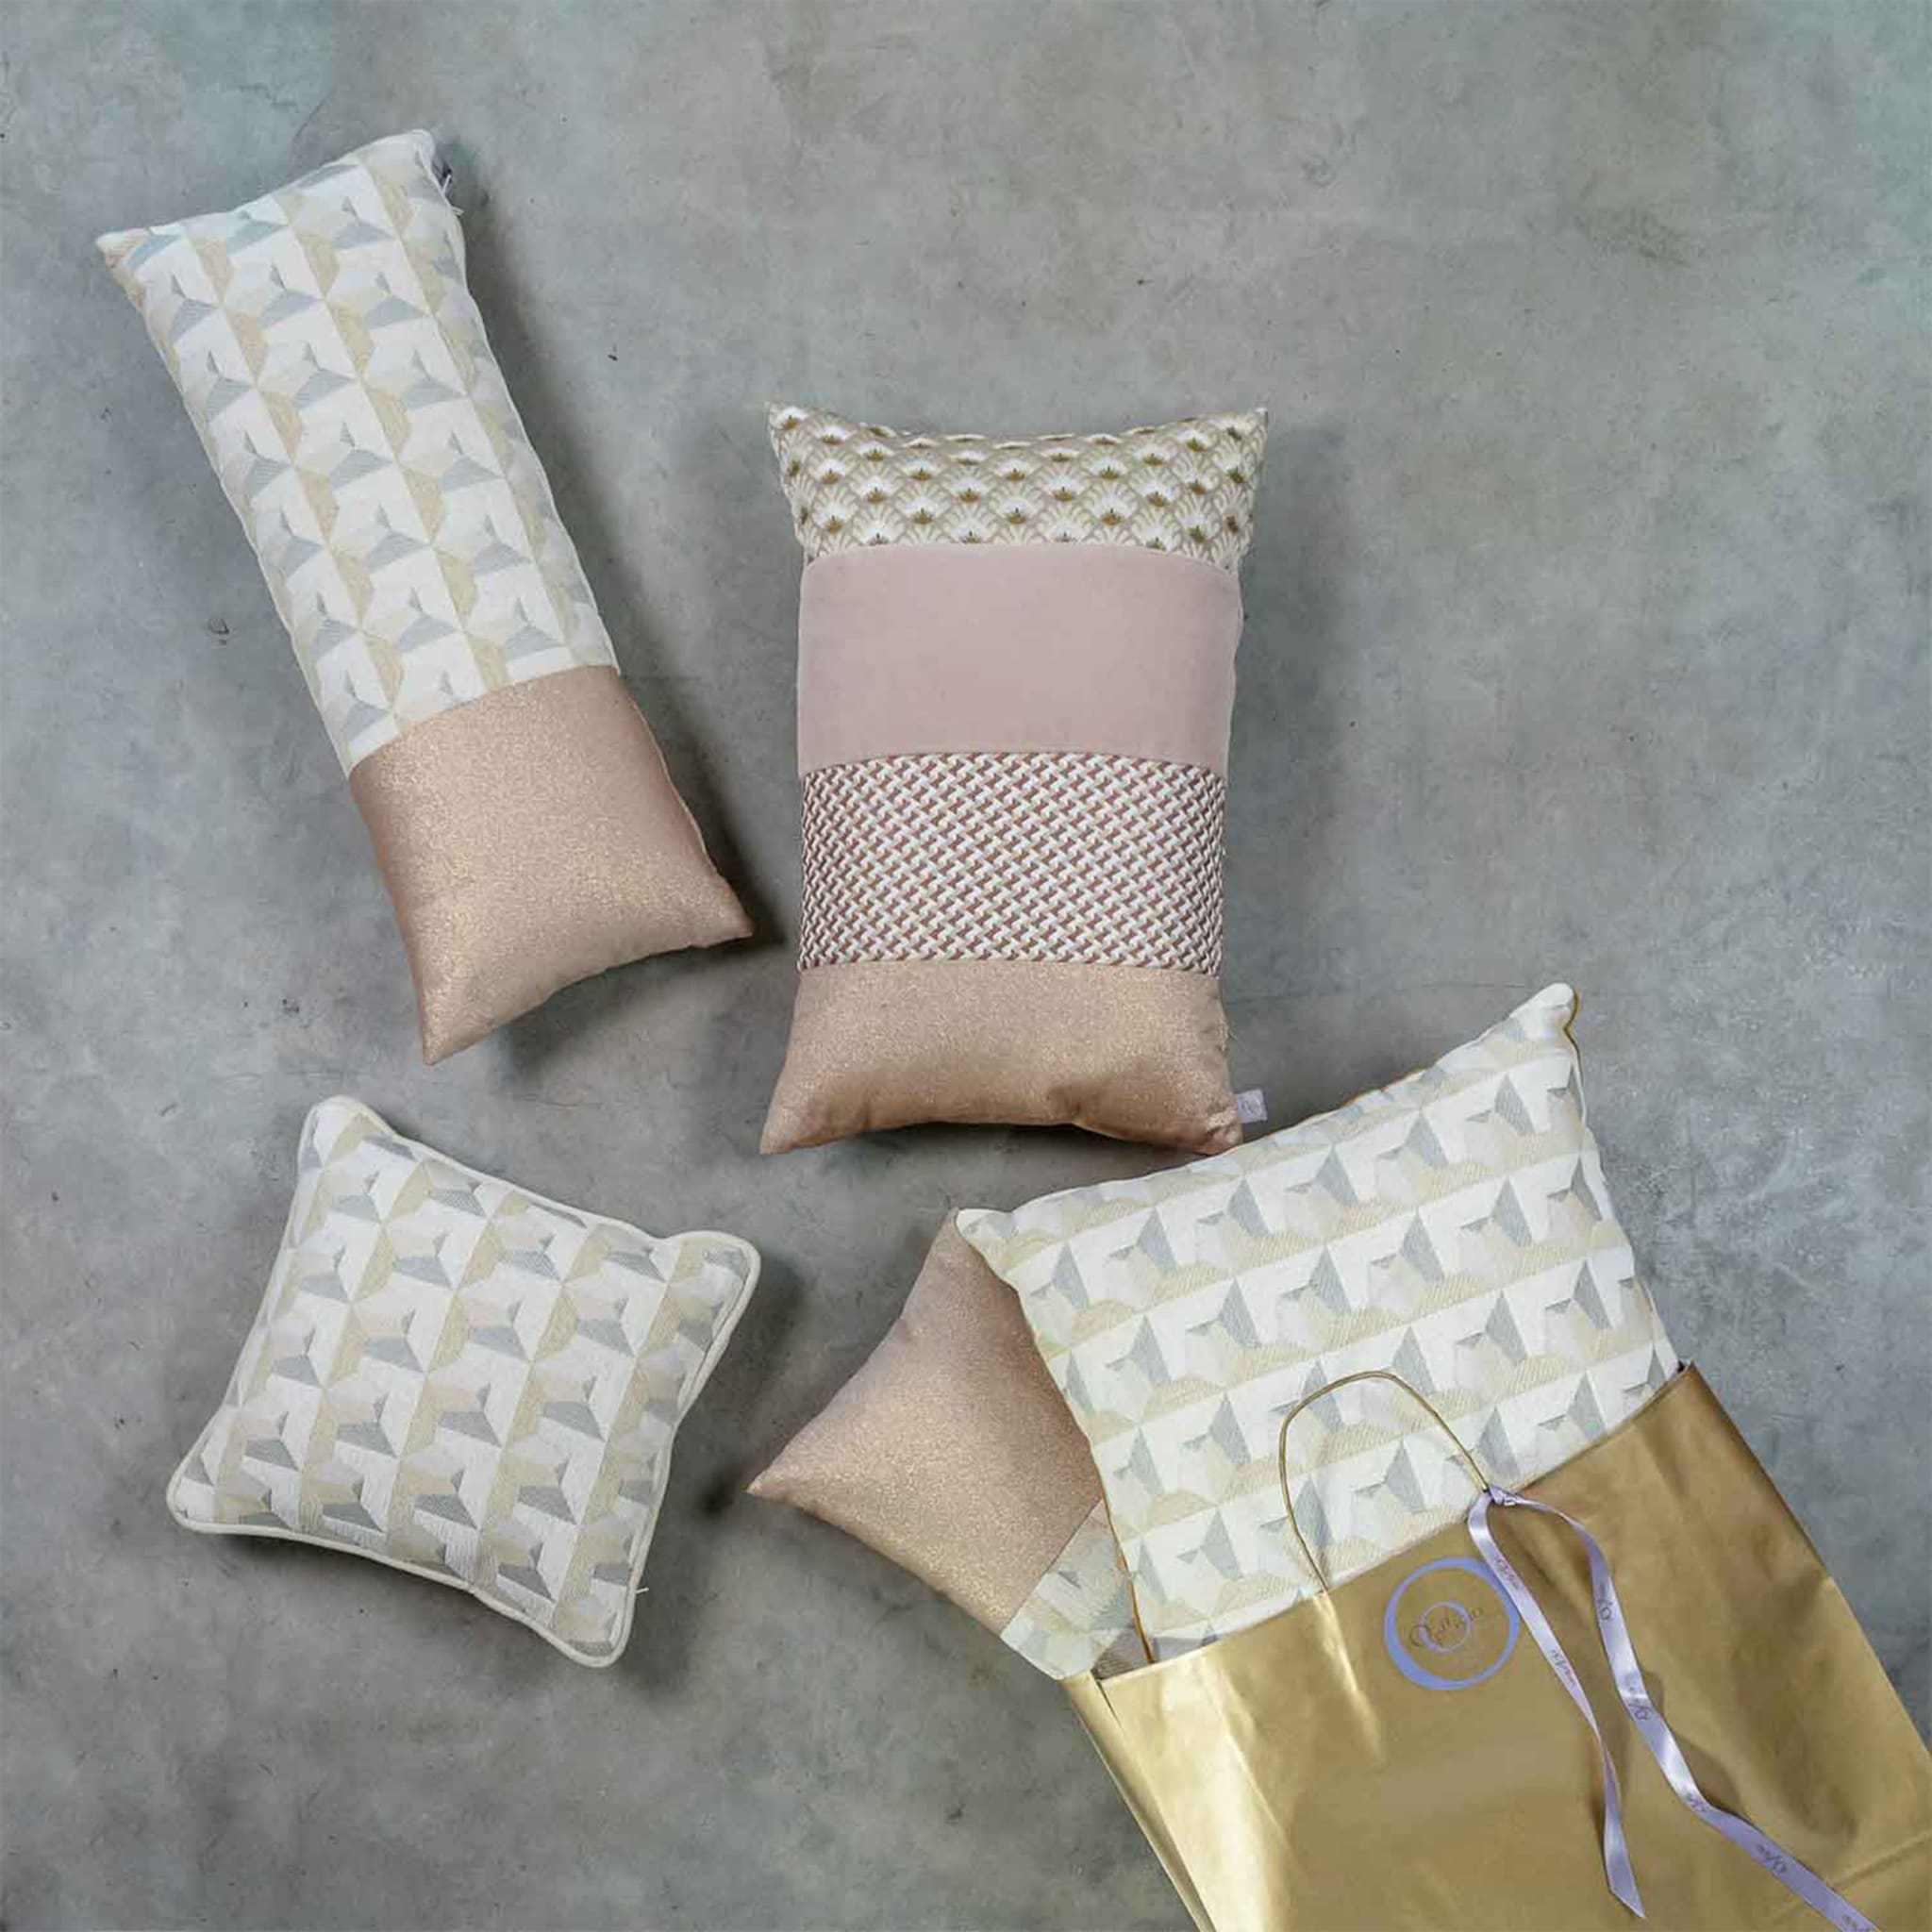 White Carrè Cushion in geometric jacquard fabric - Alternative view 2